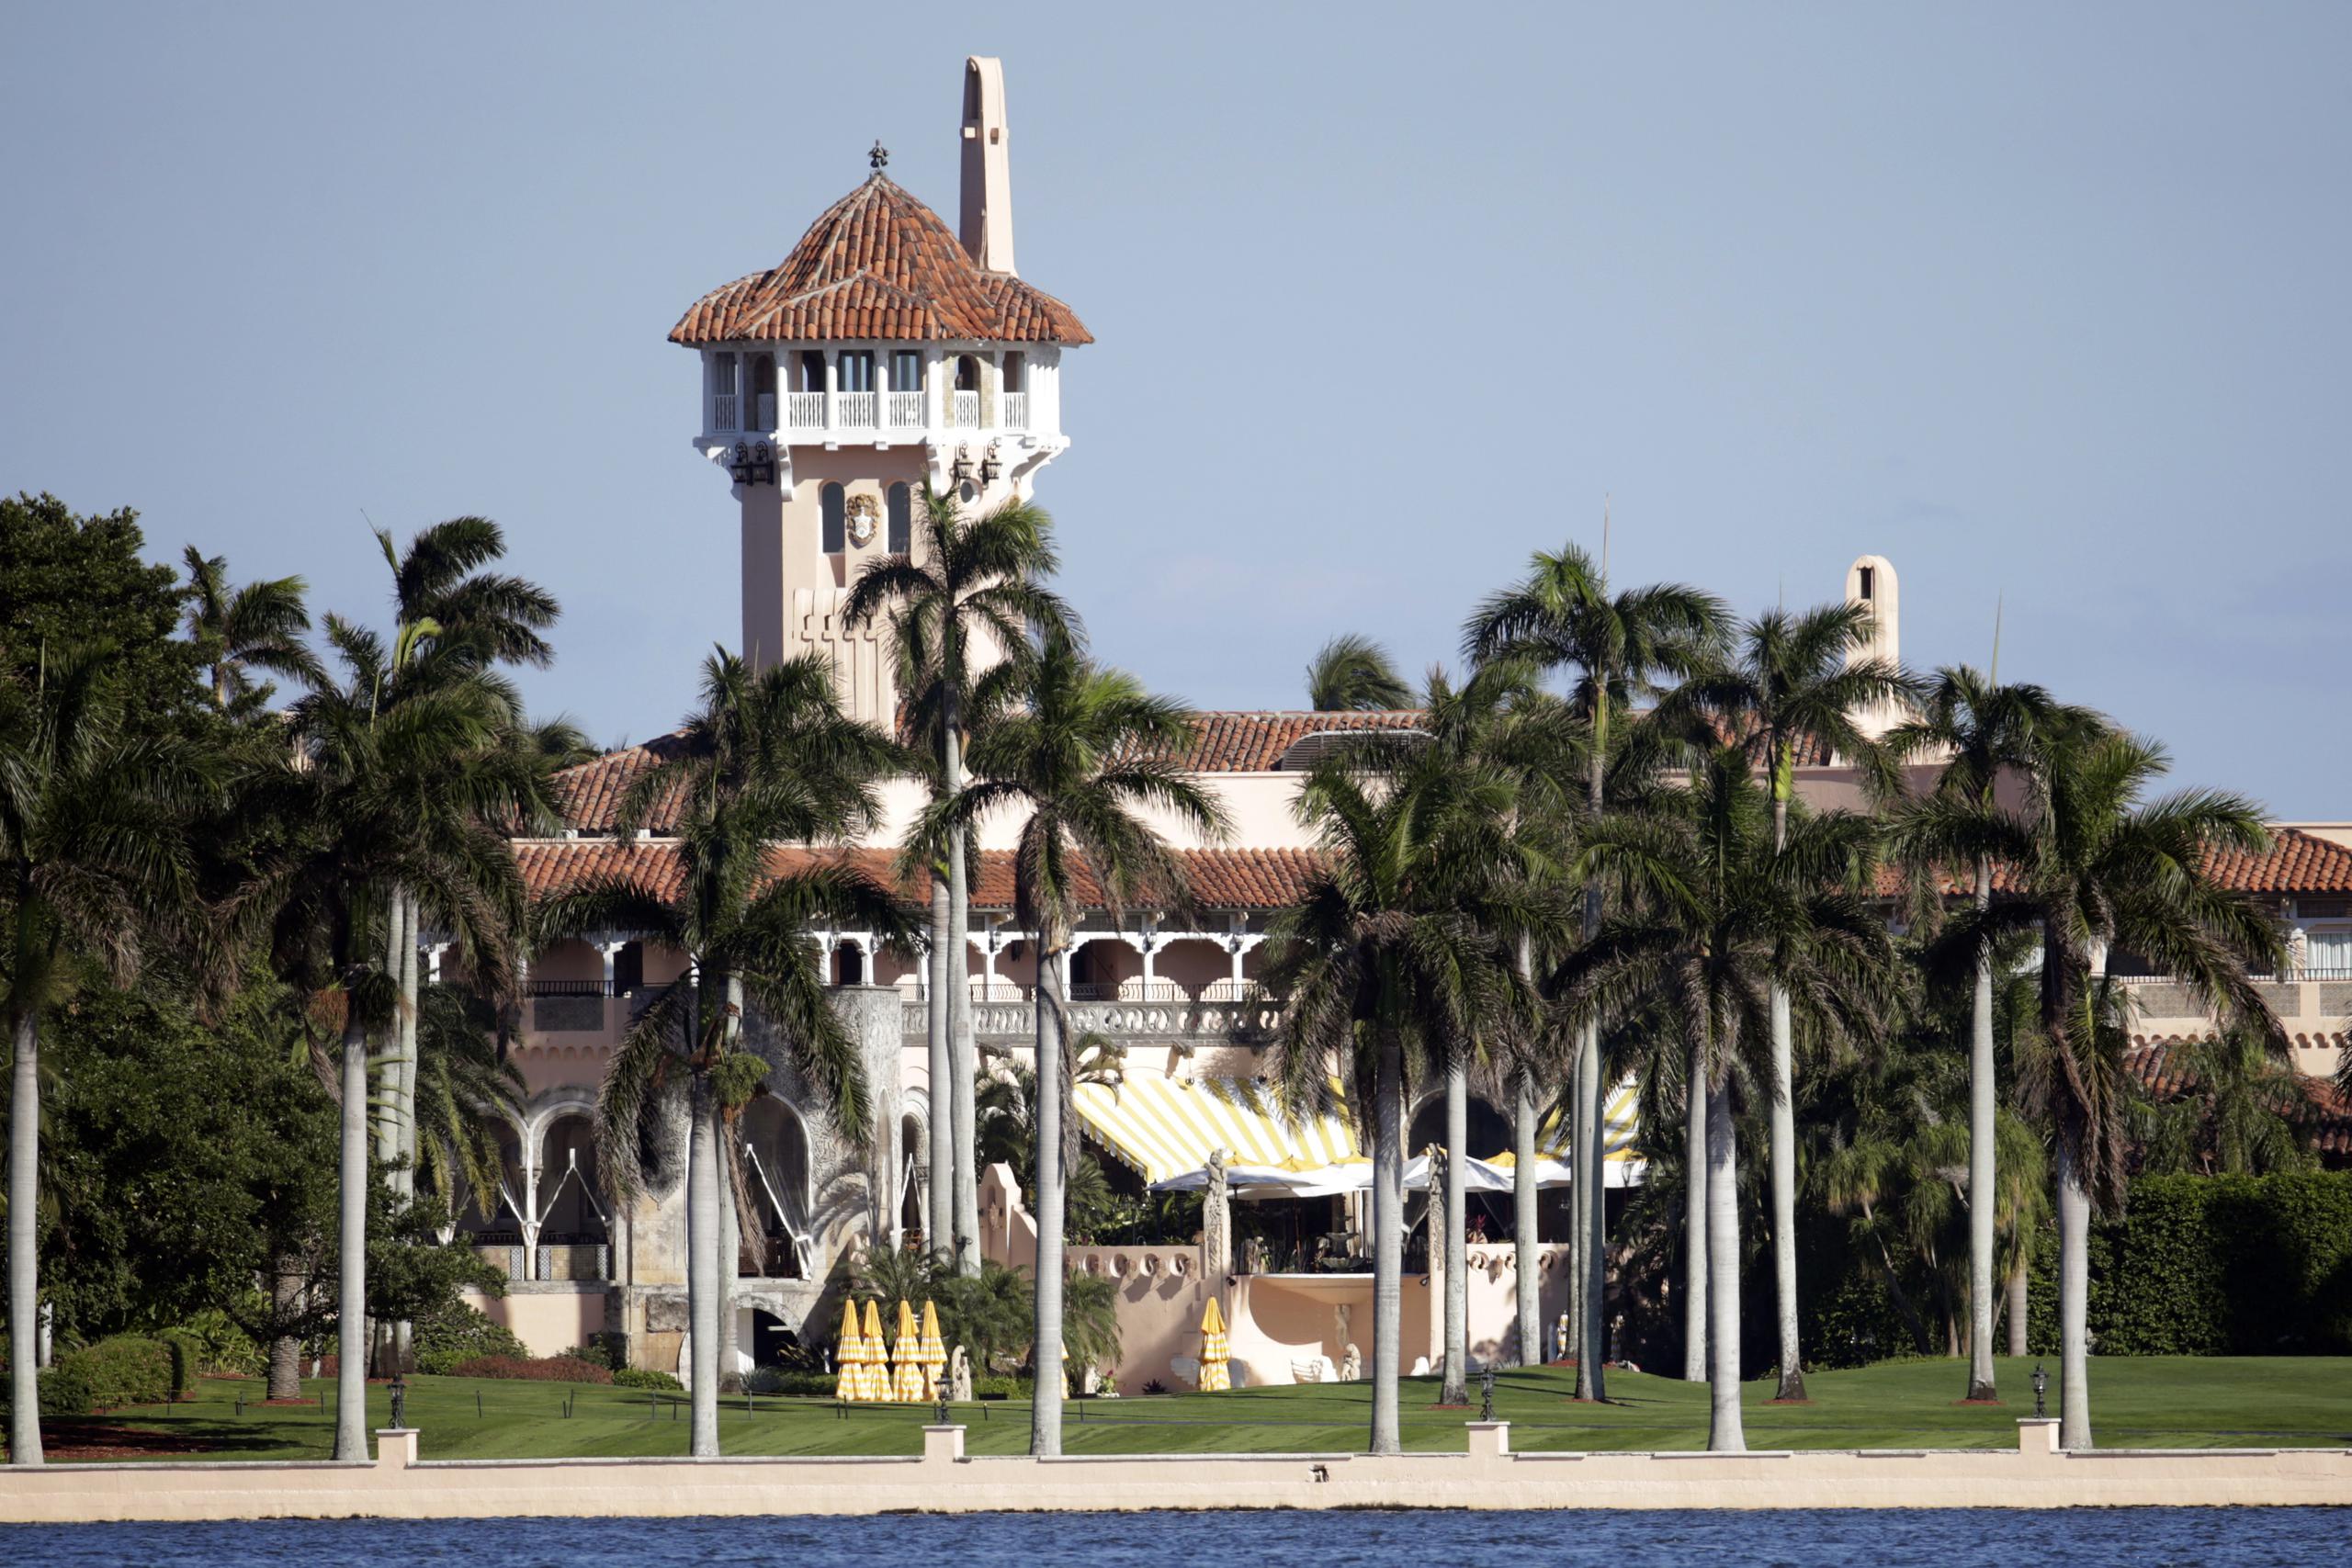 Solo Mar-a-Lago, la propiedad de Trump en Palm Beach, Florida, reportó un aumento de 10% en sus ingresos.